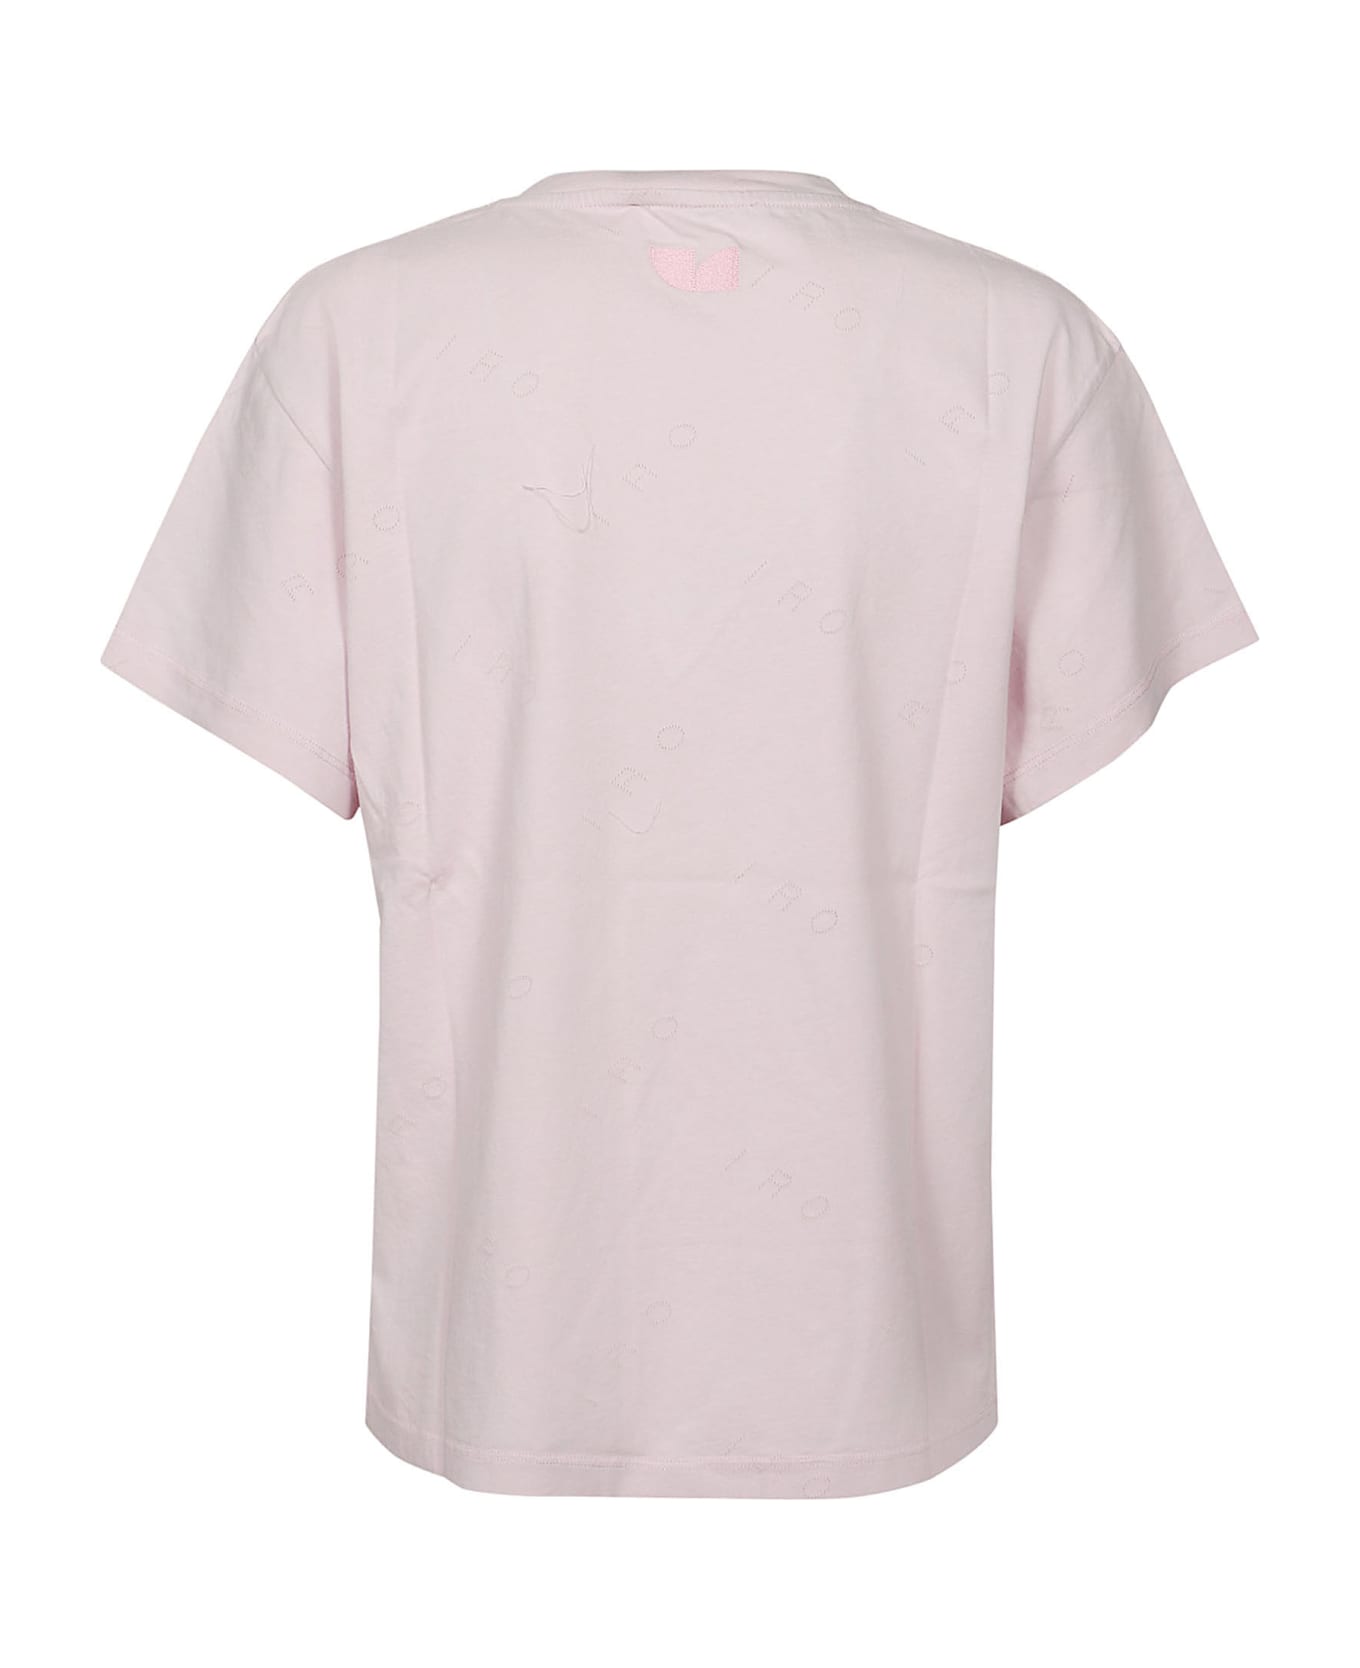 IRO Jolia T-shirt - Light Pink